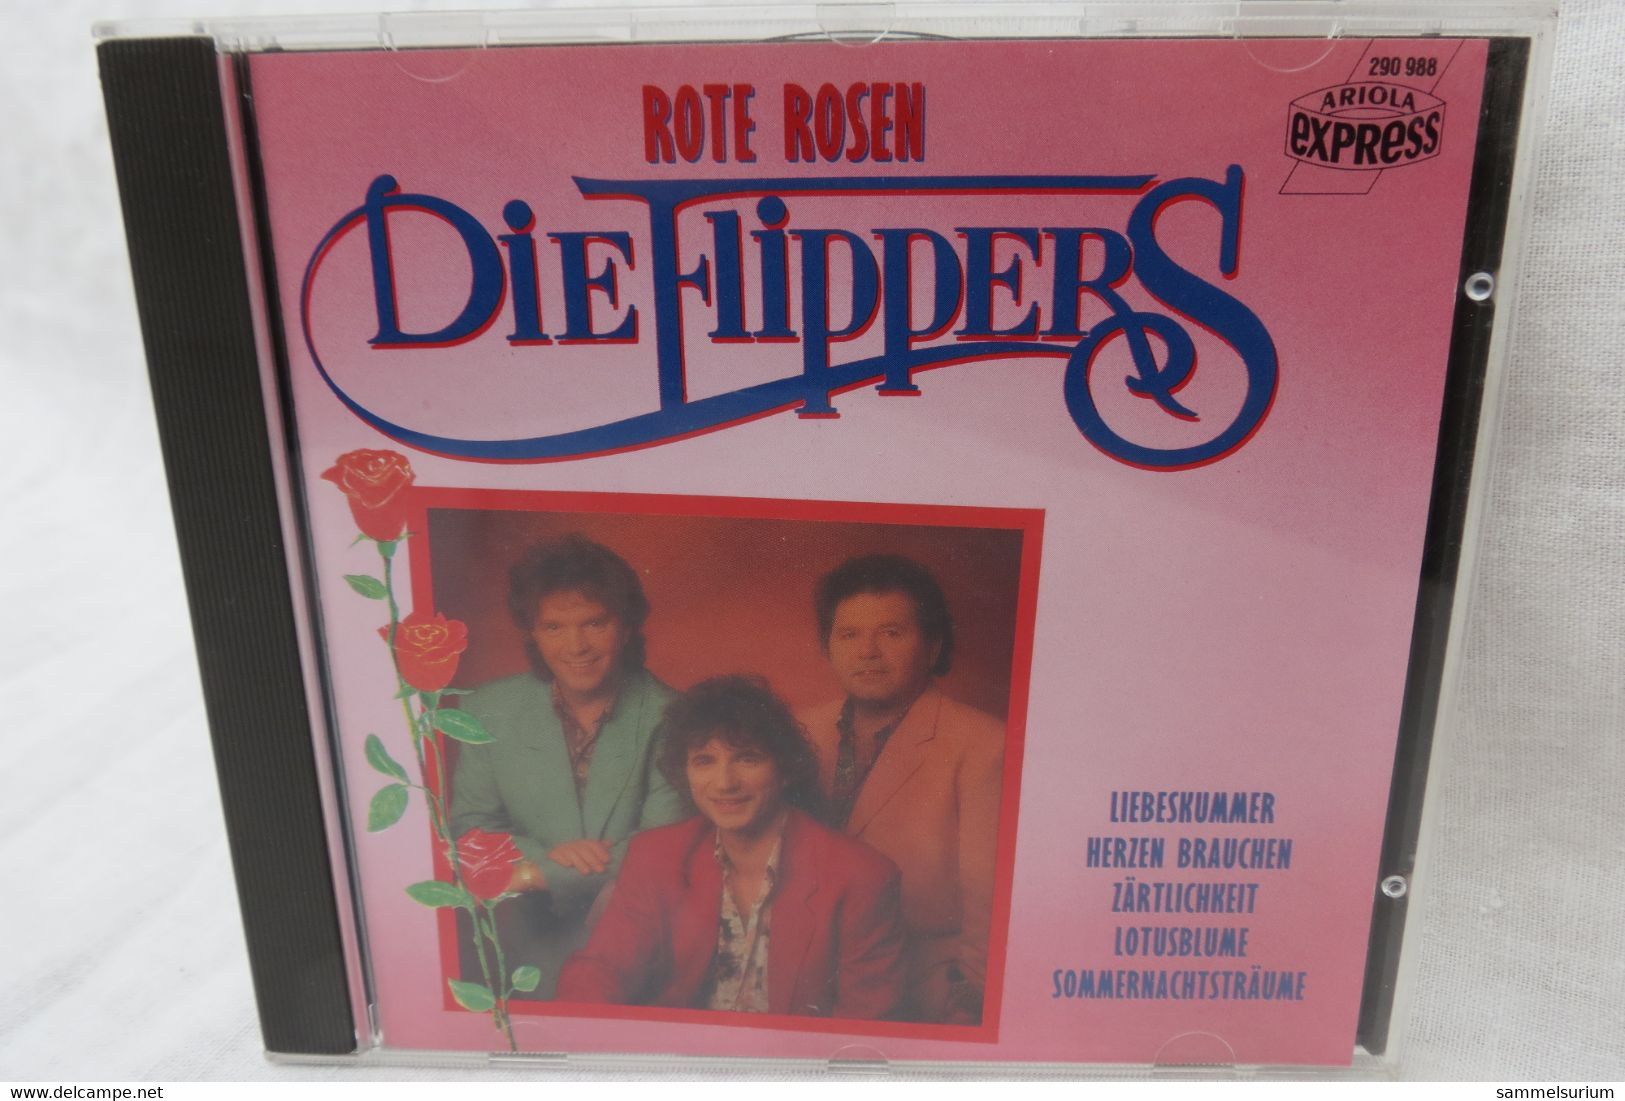 CD "Die Flippers" Rote Rosen - Sonstige - Deutsche Musik